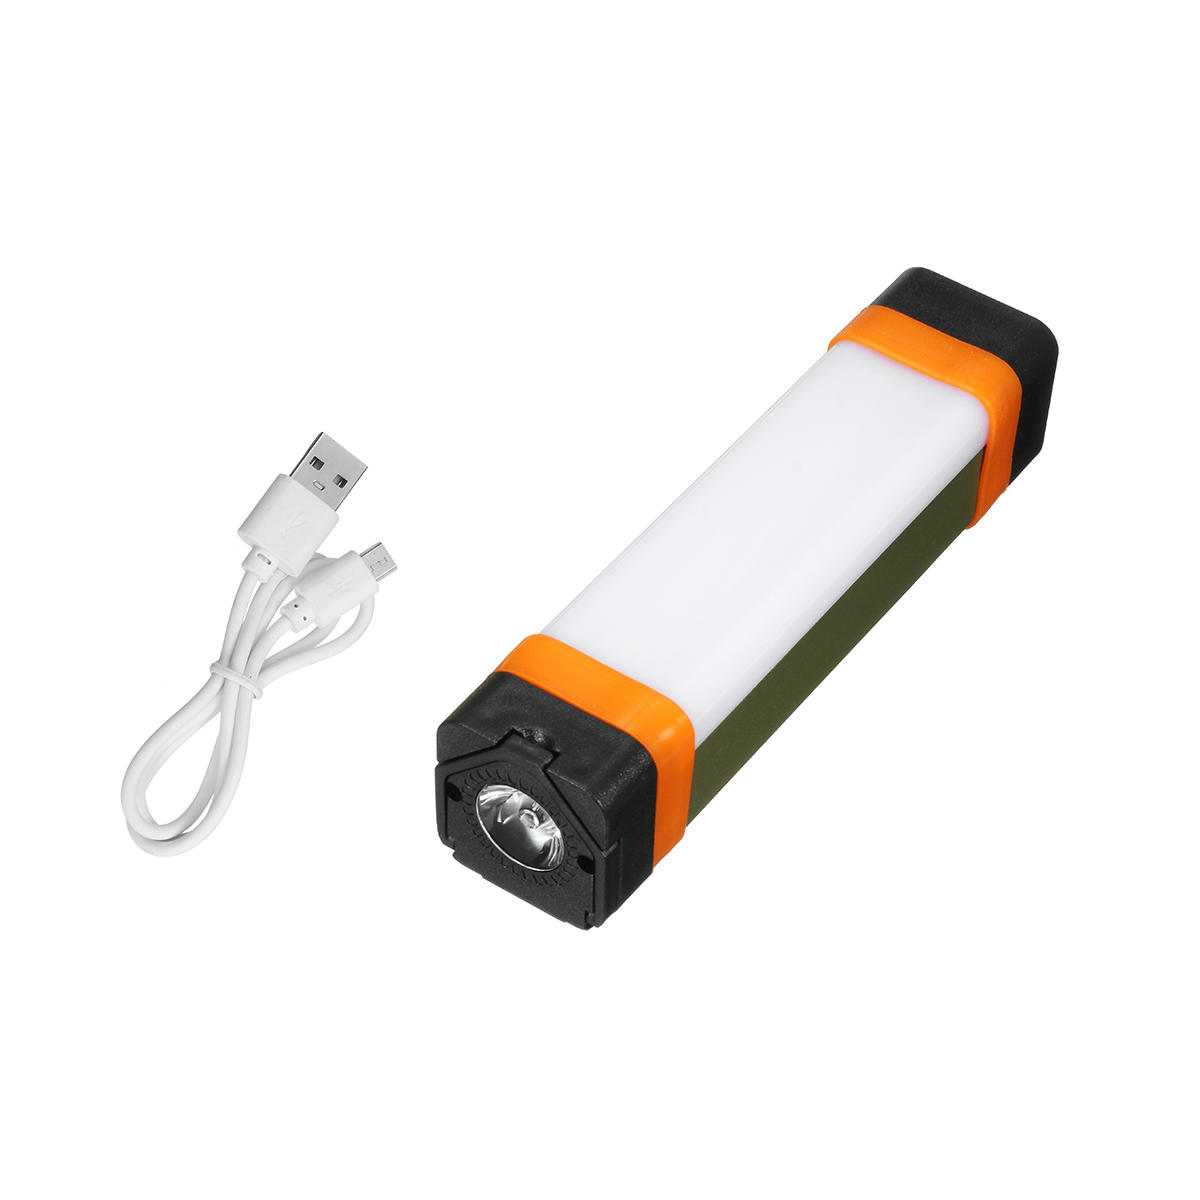 Outdoor Multifunktions Camping Licht USB wiederaufladbare Notlicht Energienbank Lampe Arbeitslicht mit Magnet und Haken